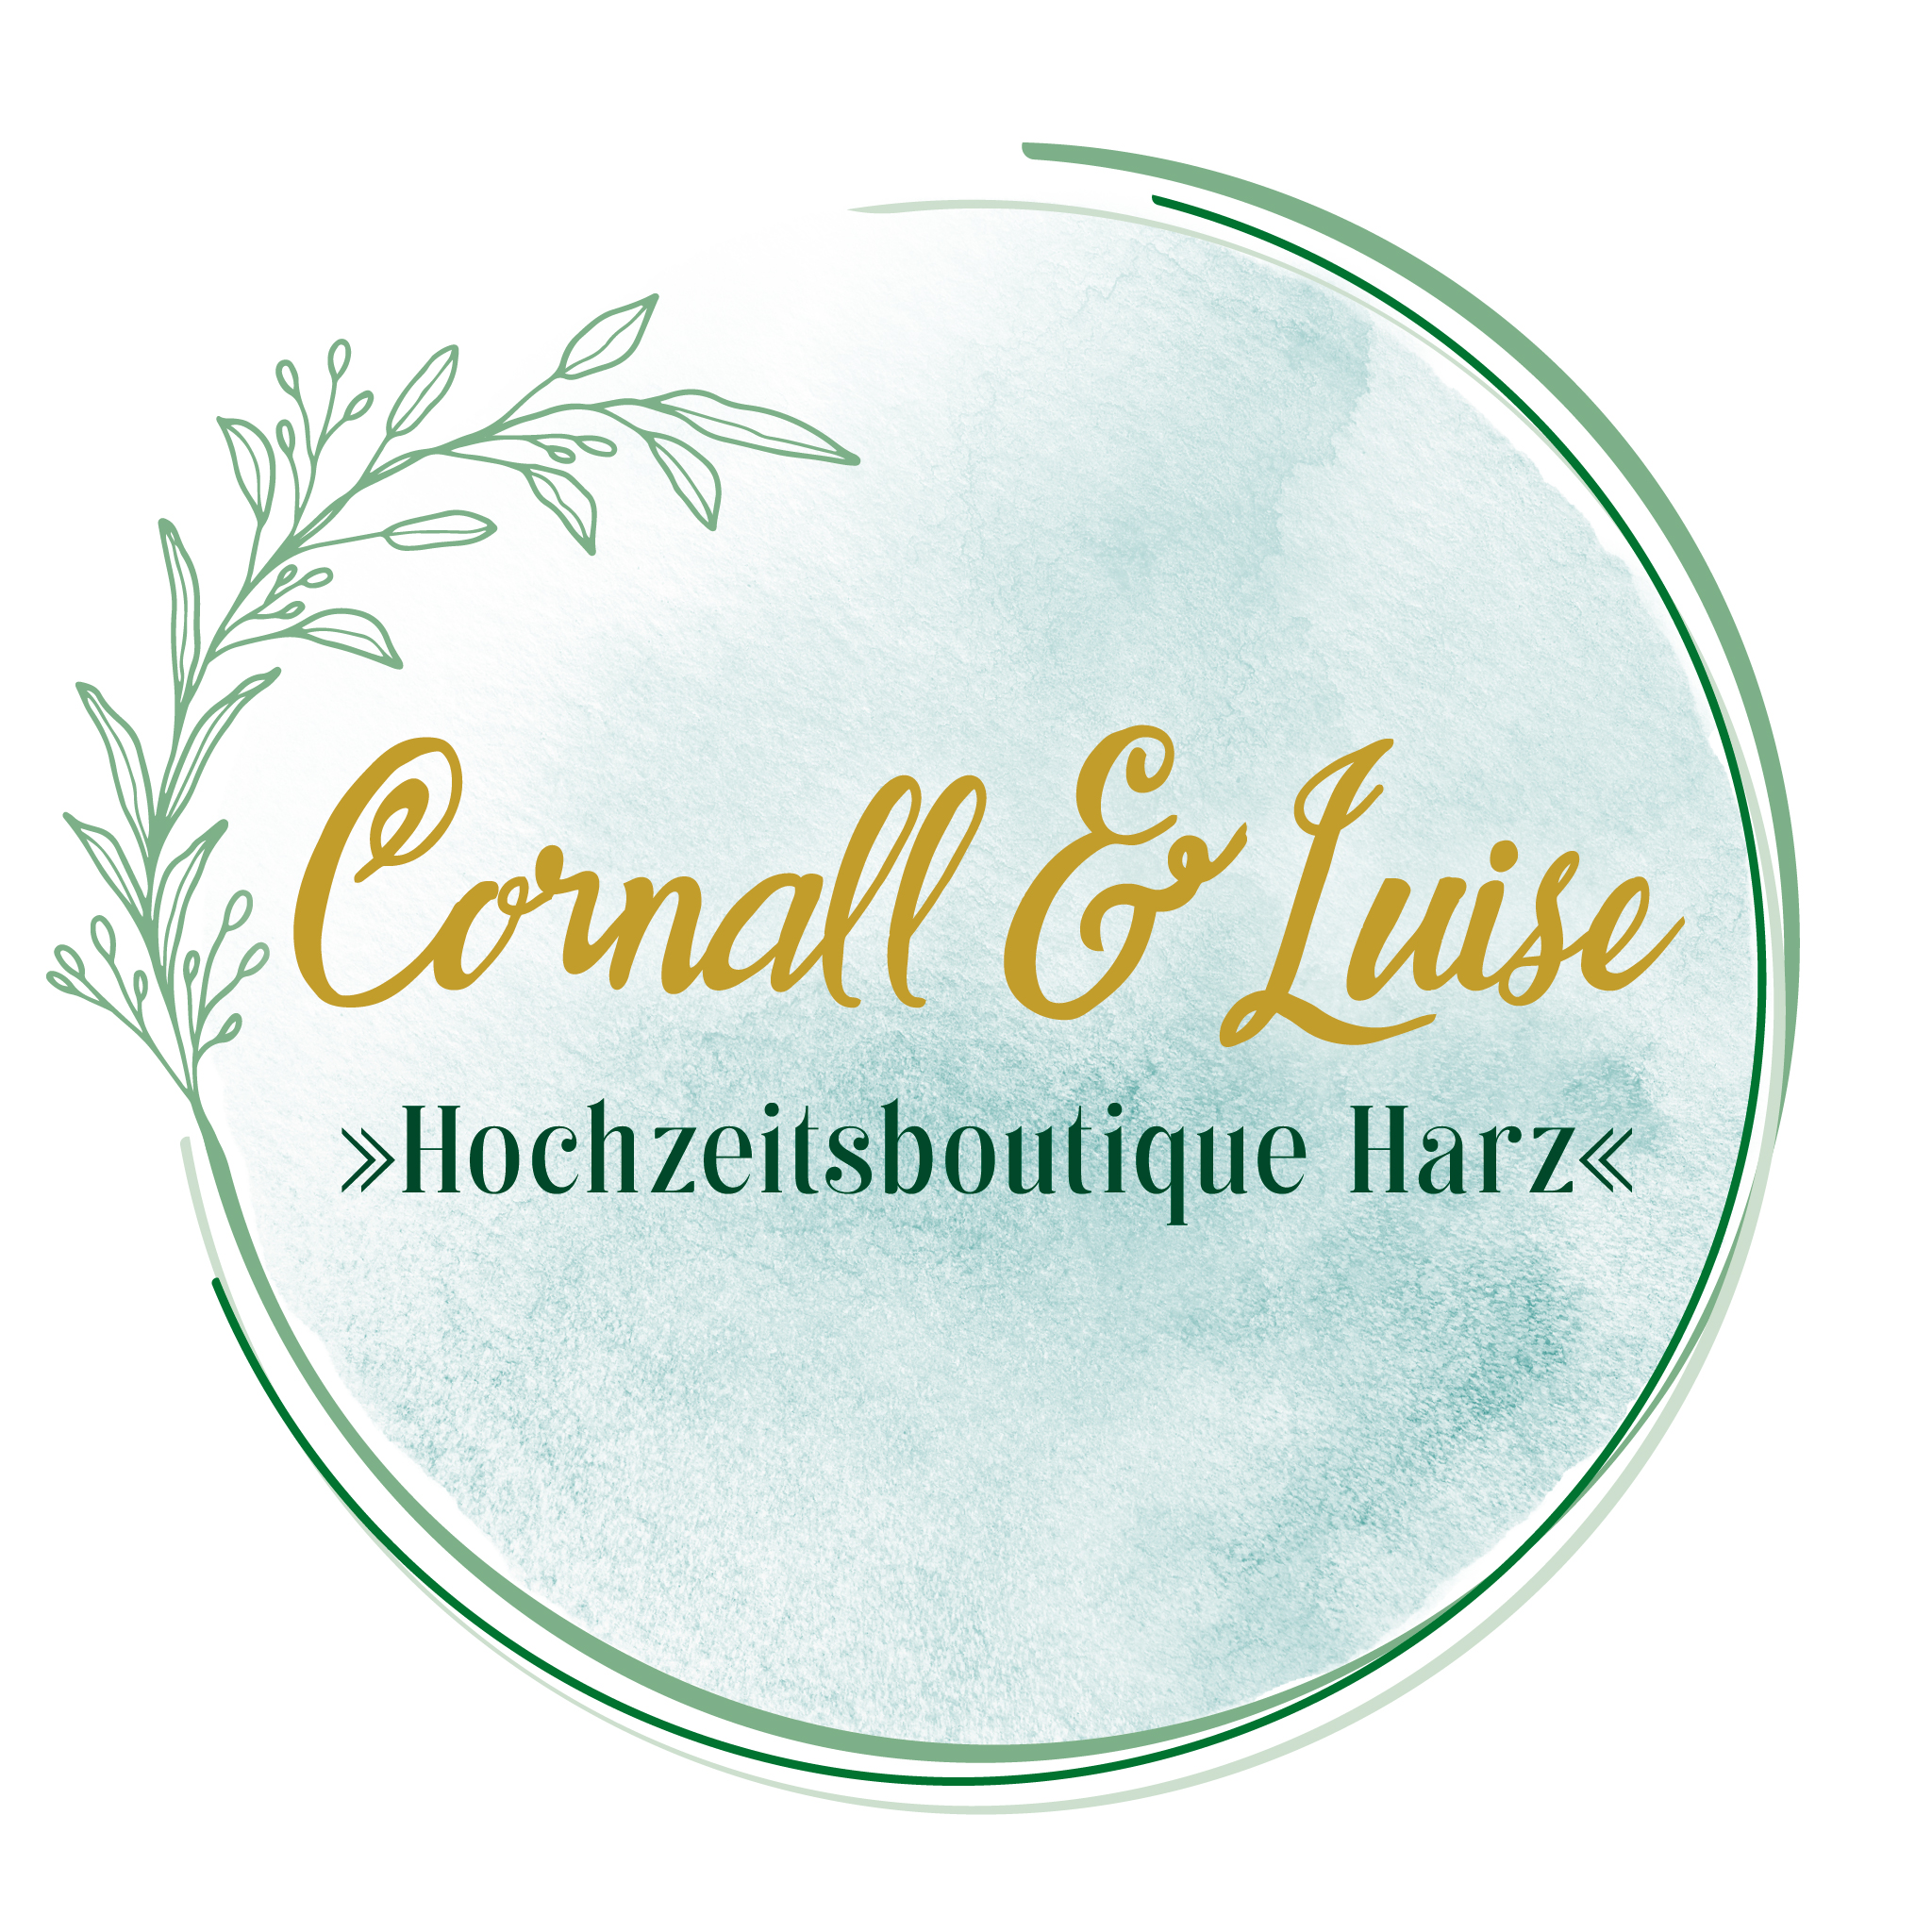 Cornall & Luise – Hochzeitsboutique Harz